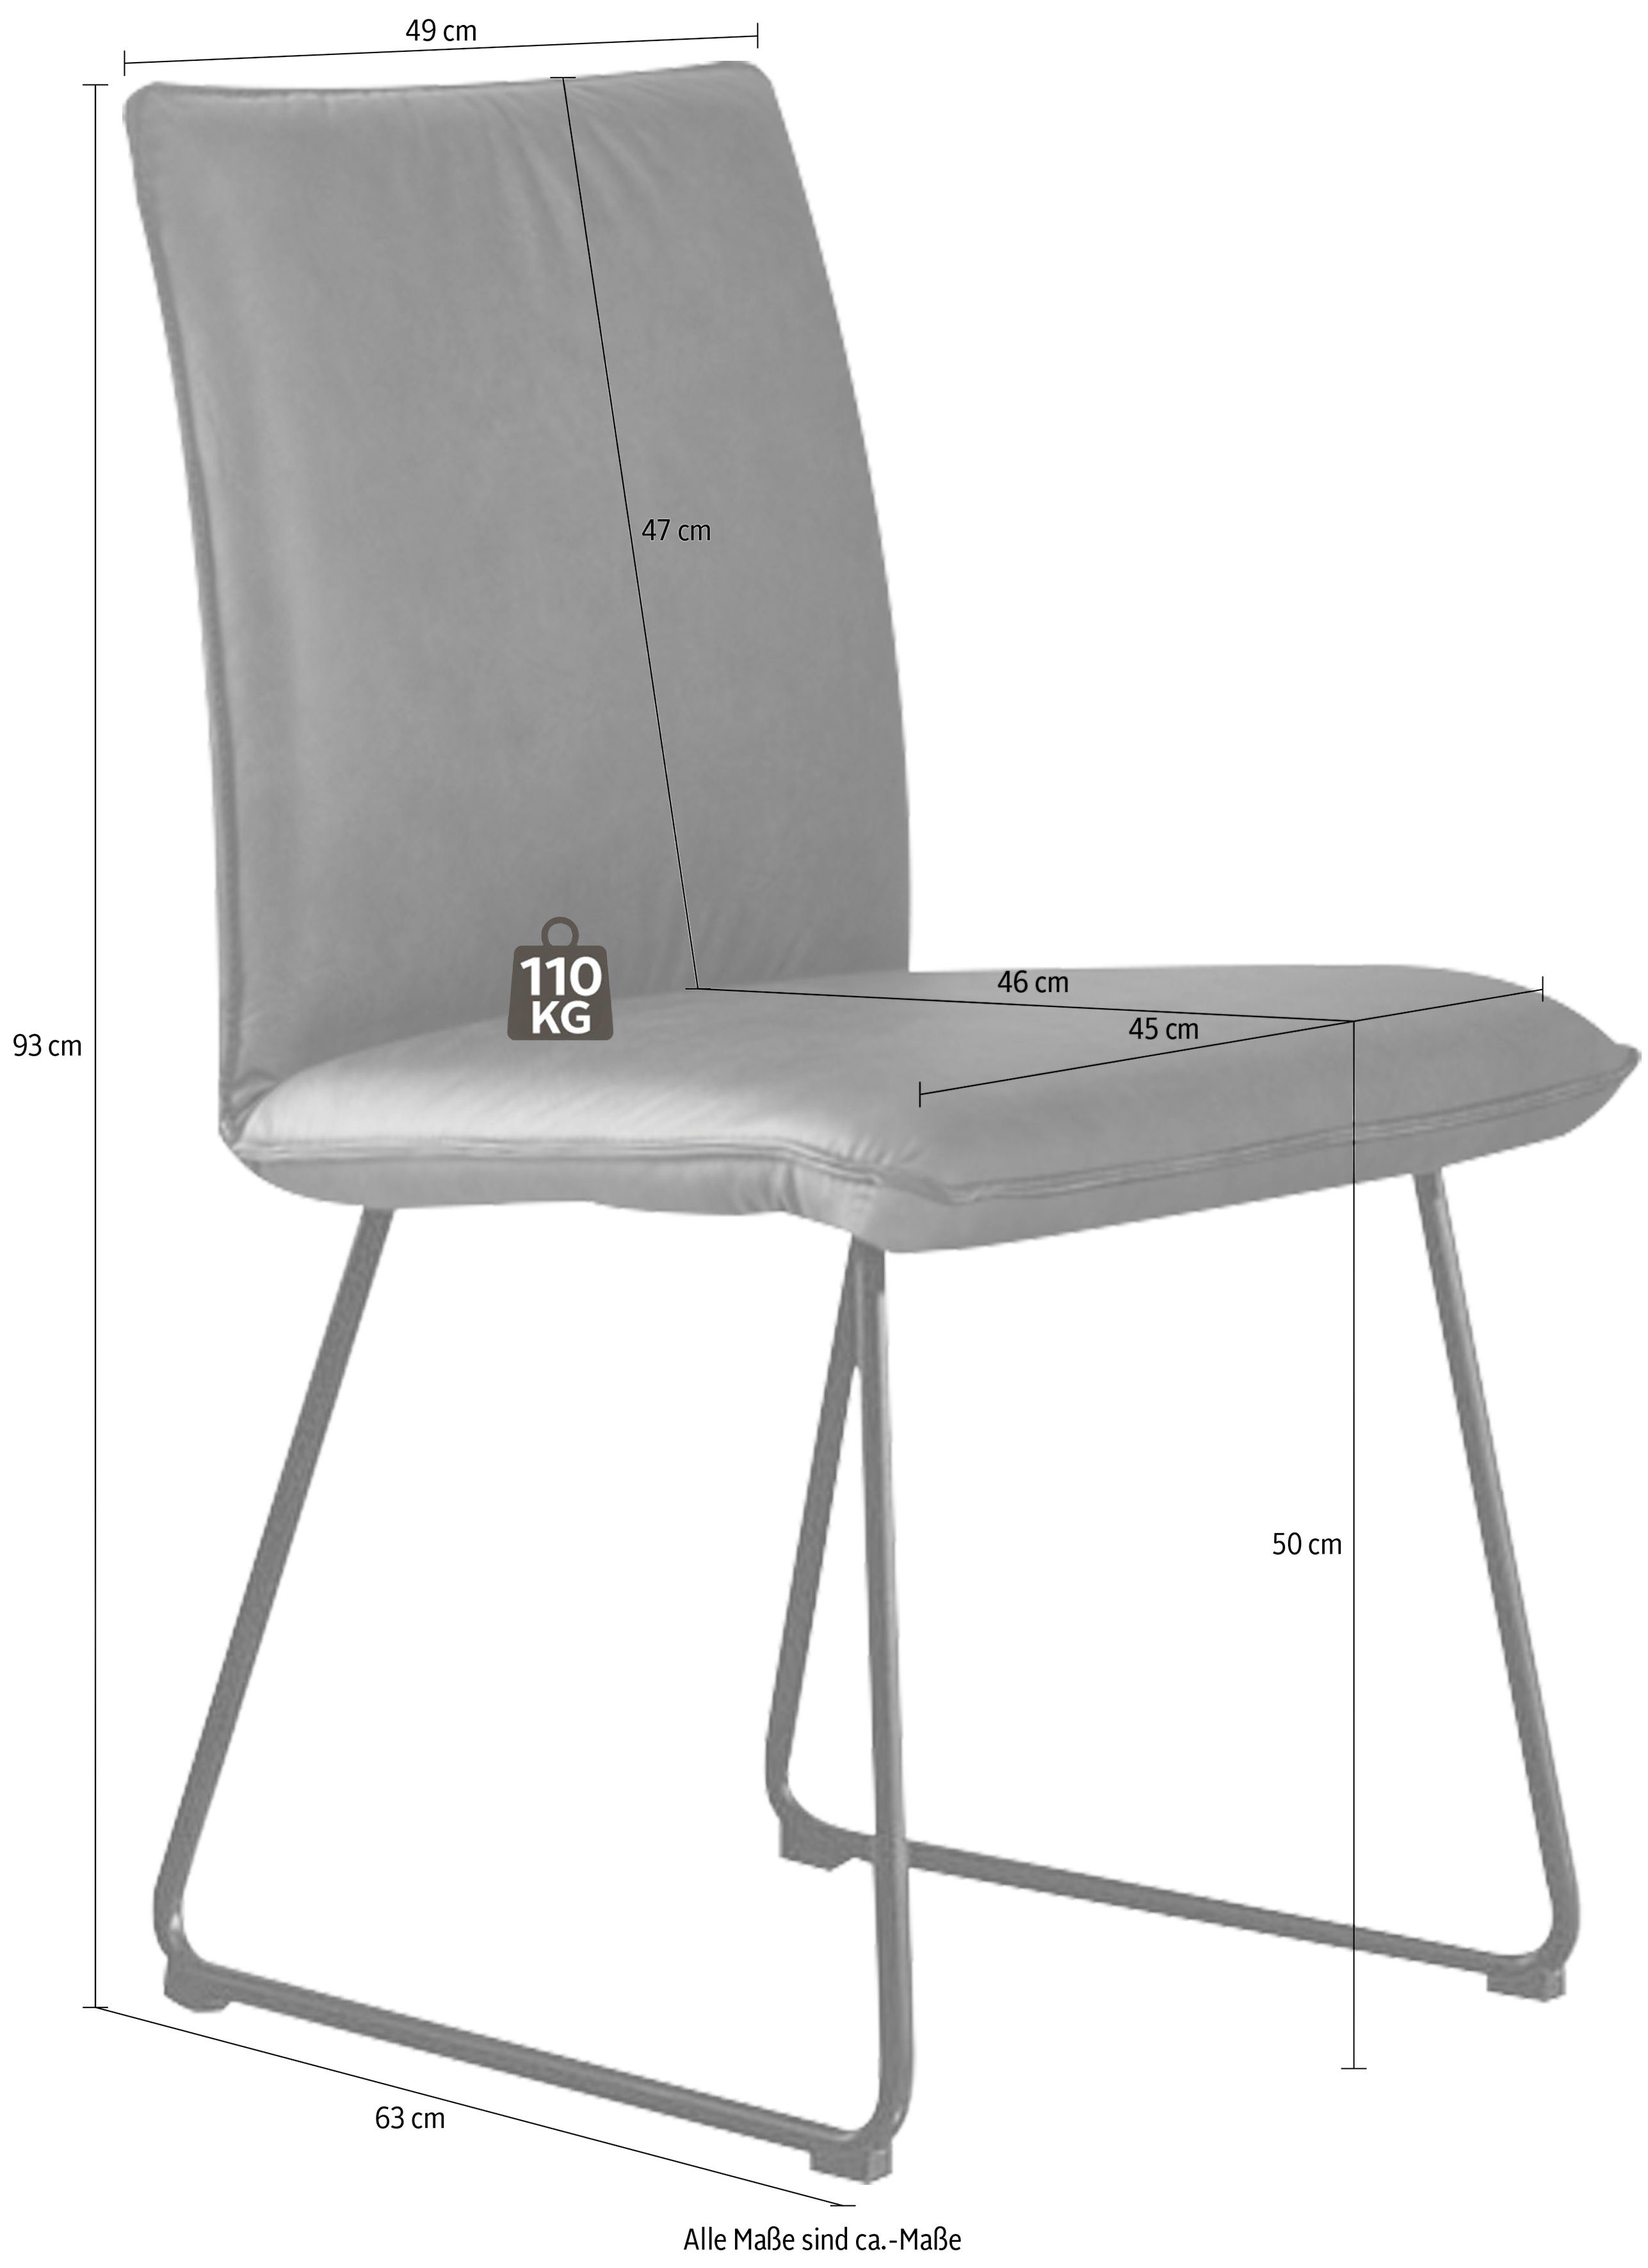 Komfort Rundrohrkufe Deseo schwarz mit Struktur Metall in & Wohnen Stuhl II, Kufenstuhl K+W